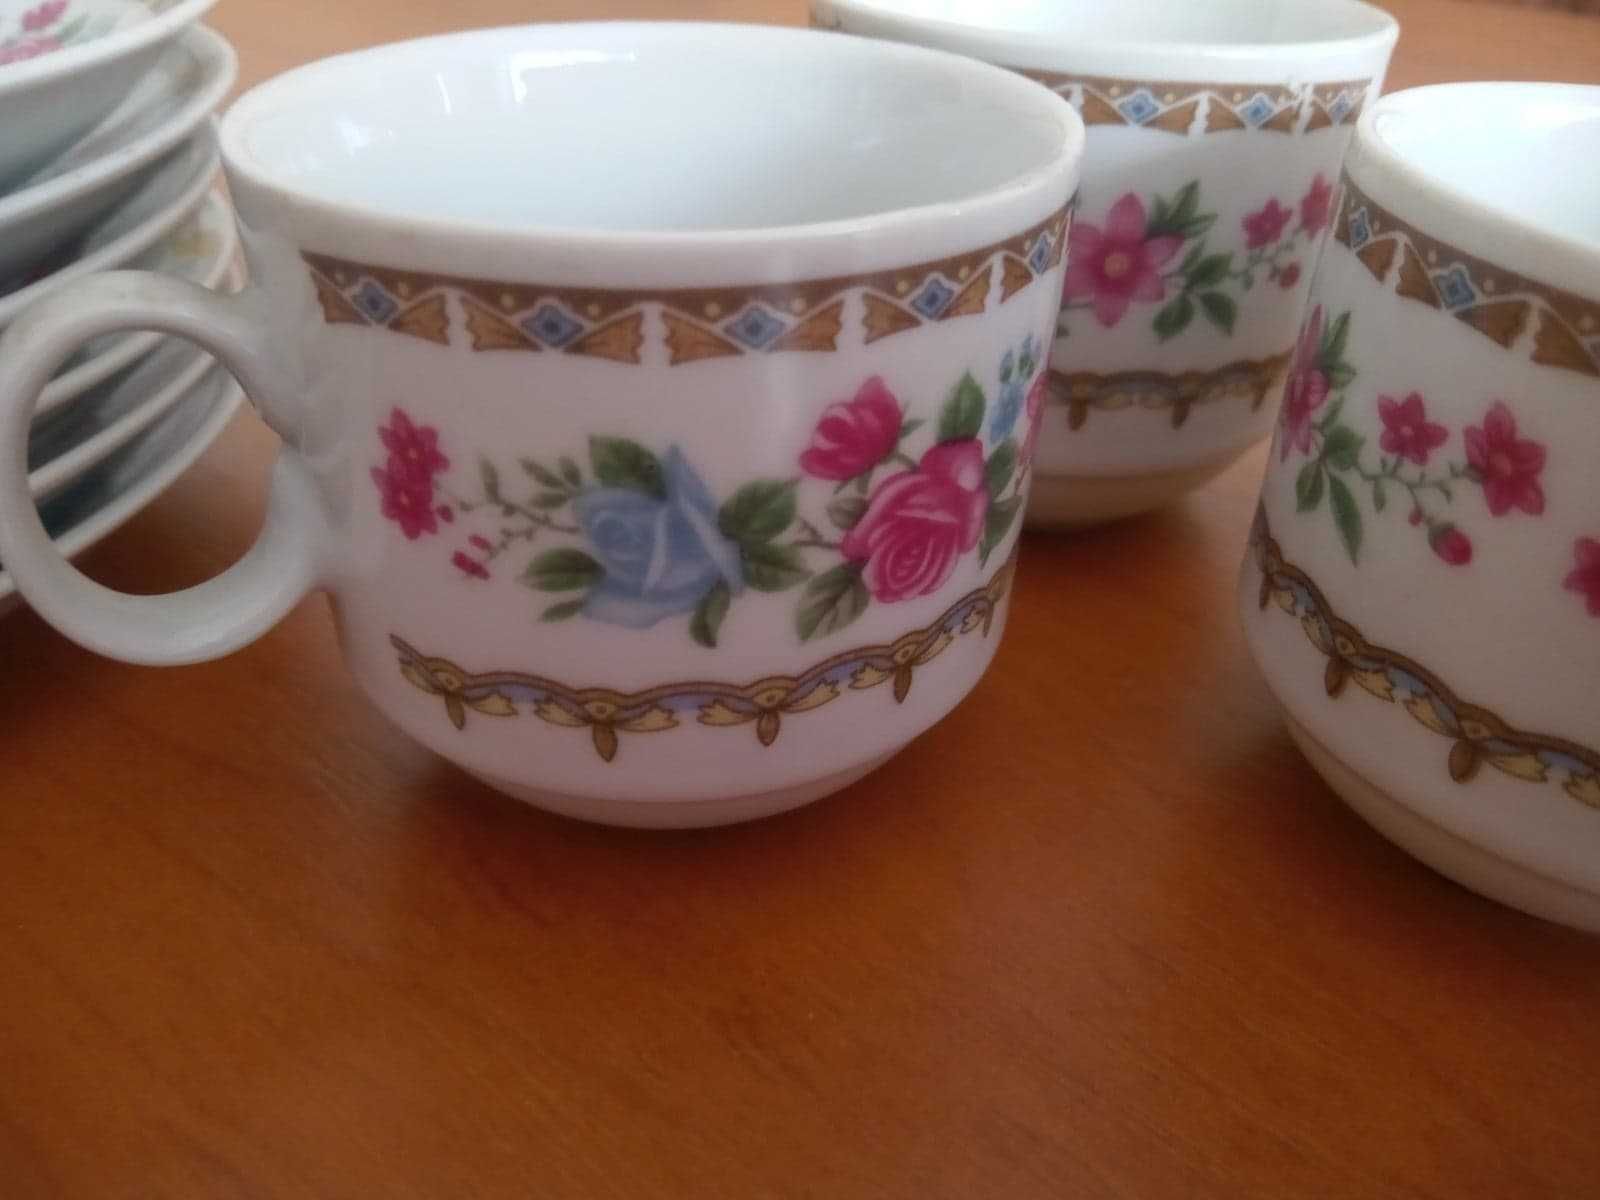 zestaw expresso chińska porcelana 5 filiżanek do kawy kultowy PRL